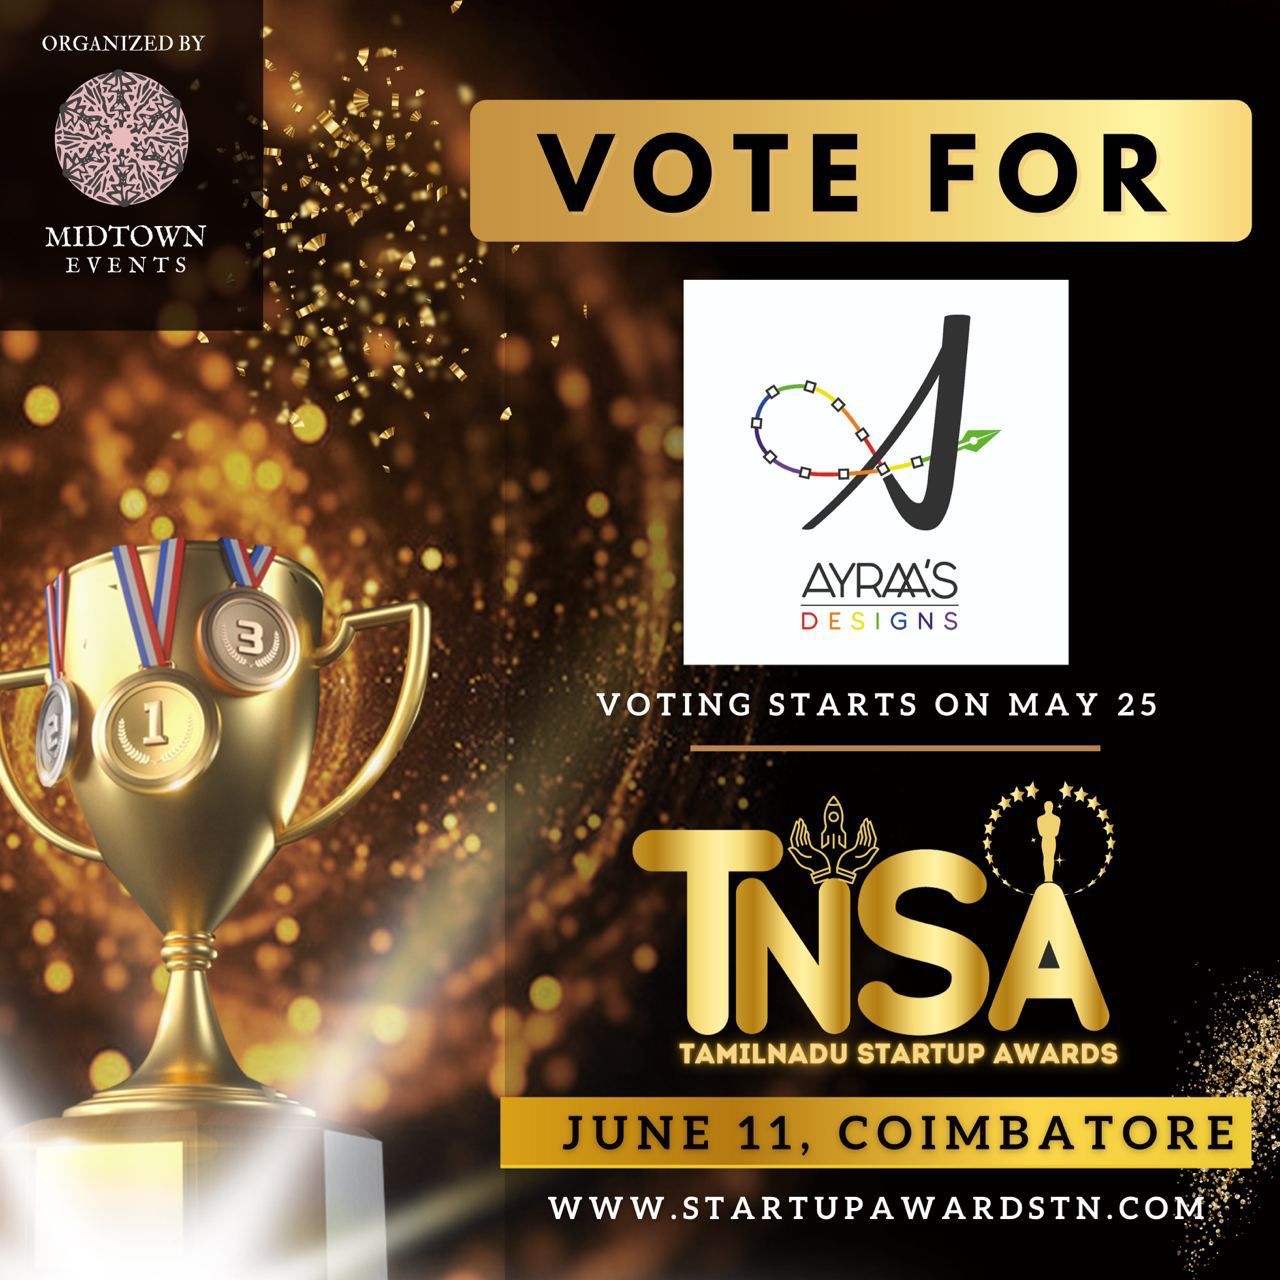 TNSA awards poster